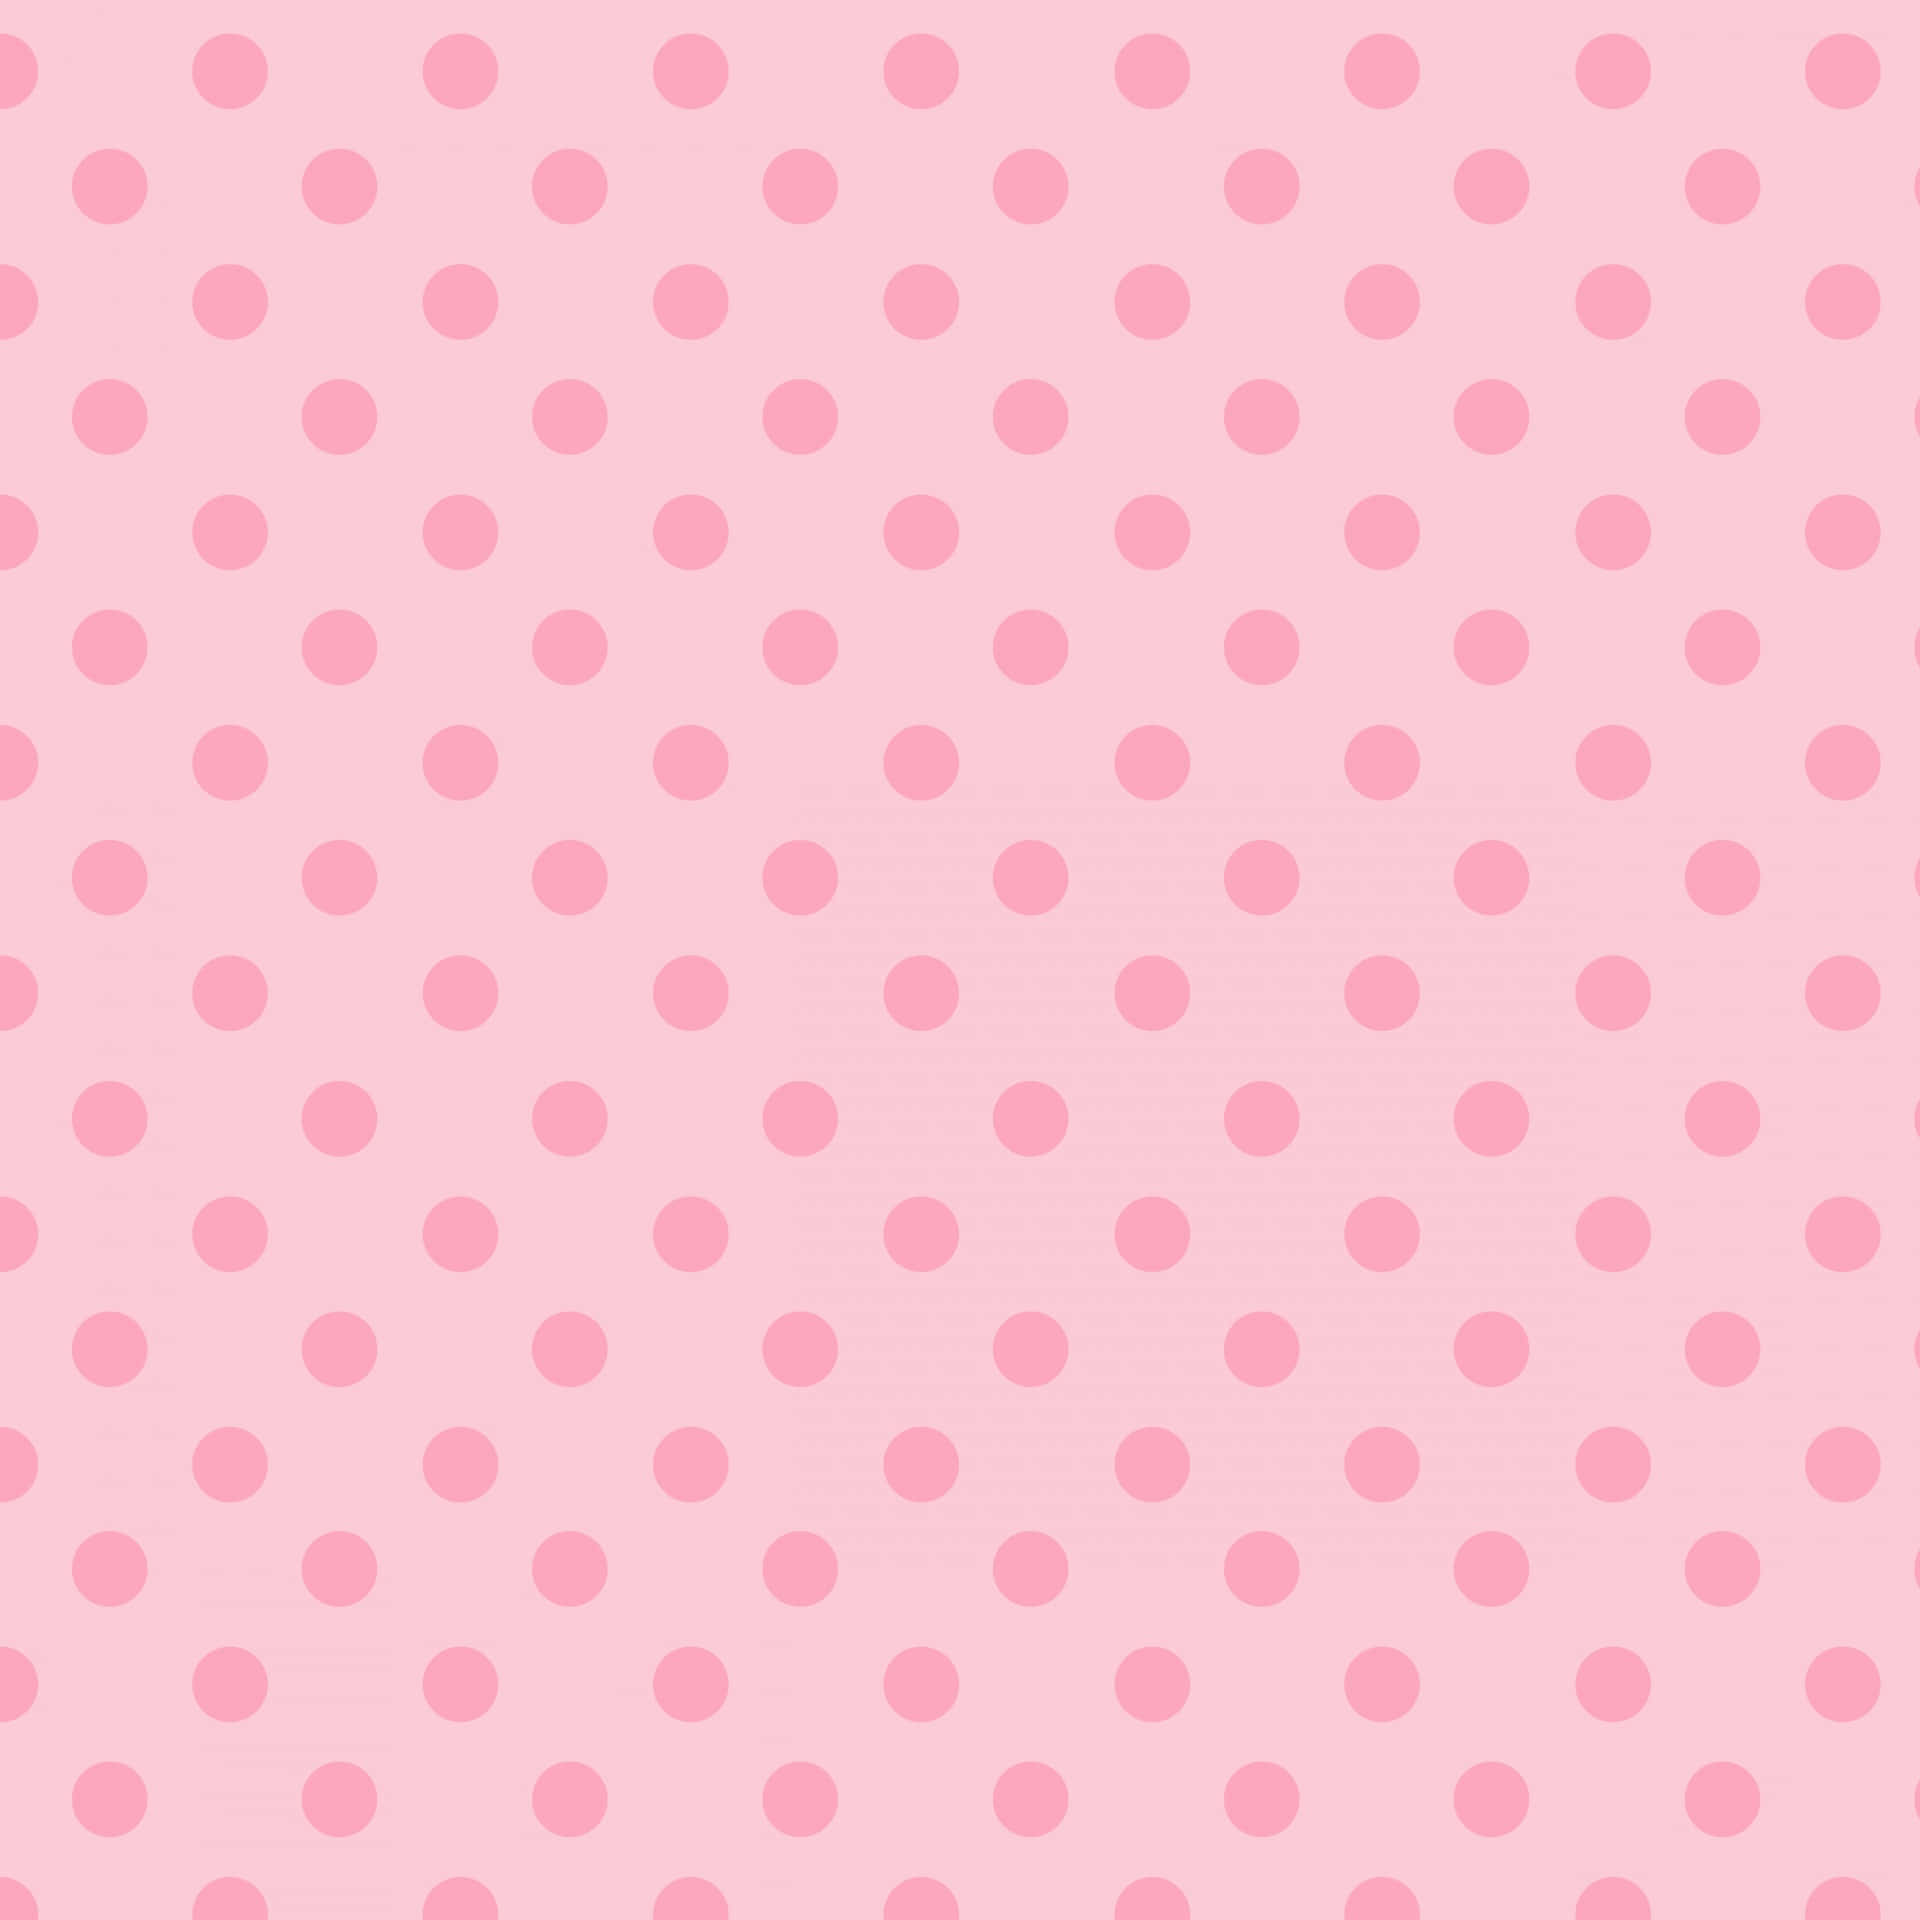 Unfondo Con Un Clásico Patrón De Lunares En Color Rosa Y Blanco. Fondo de pantalla